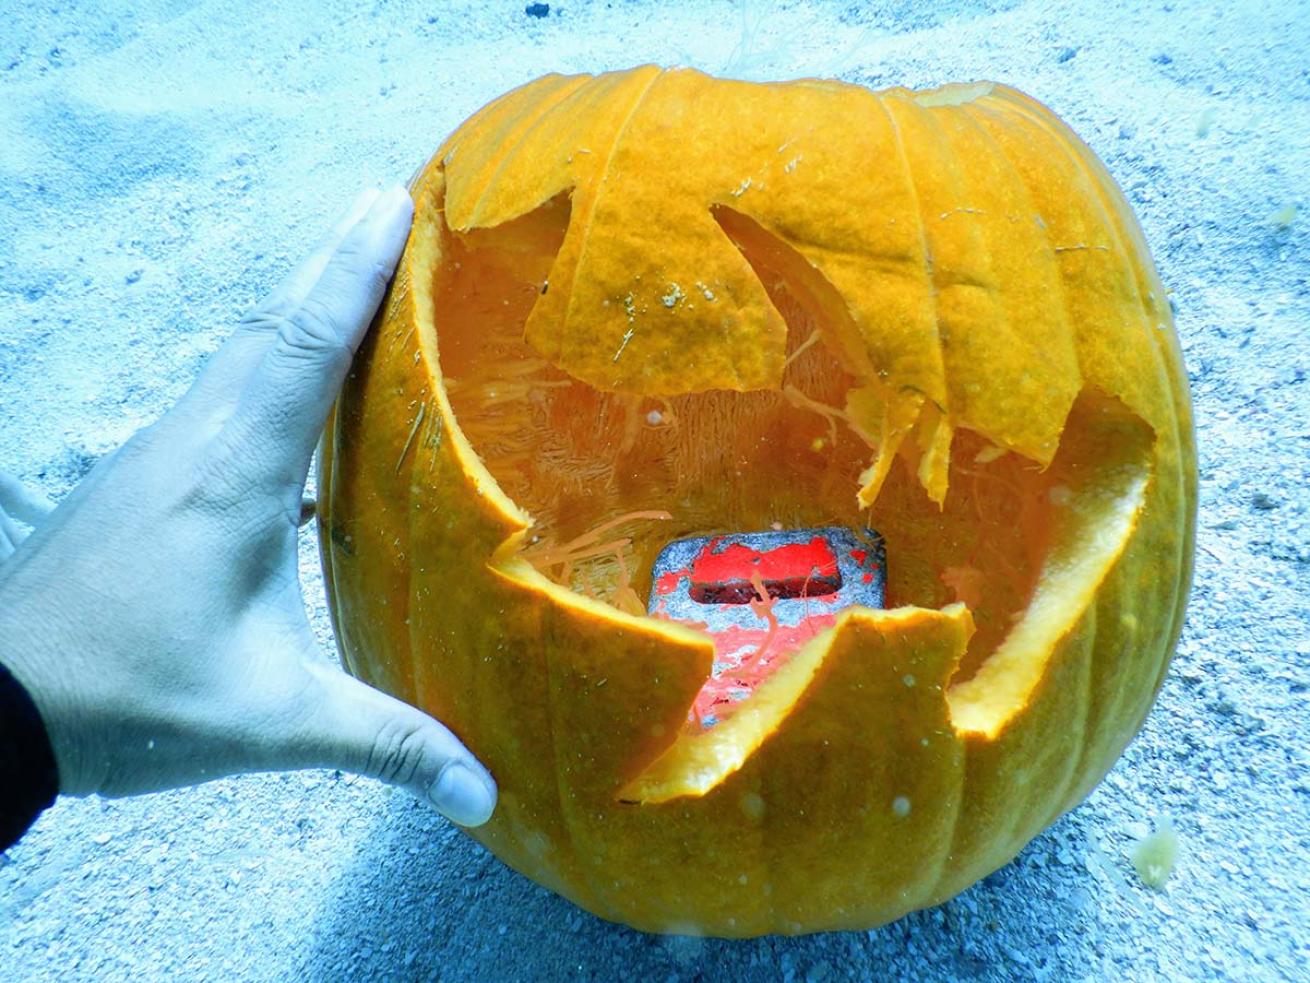 Carved pumpkin underwater